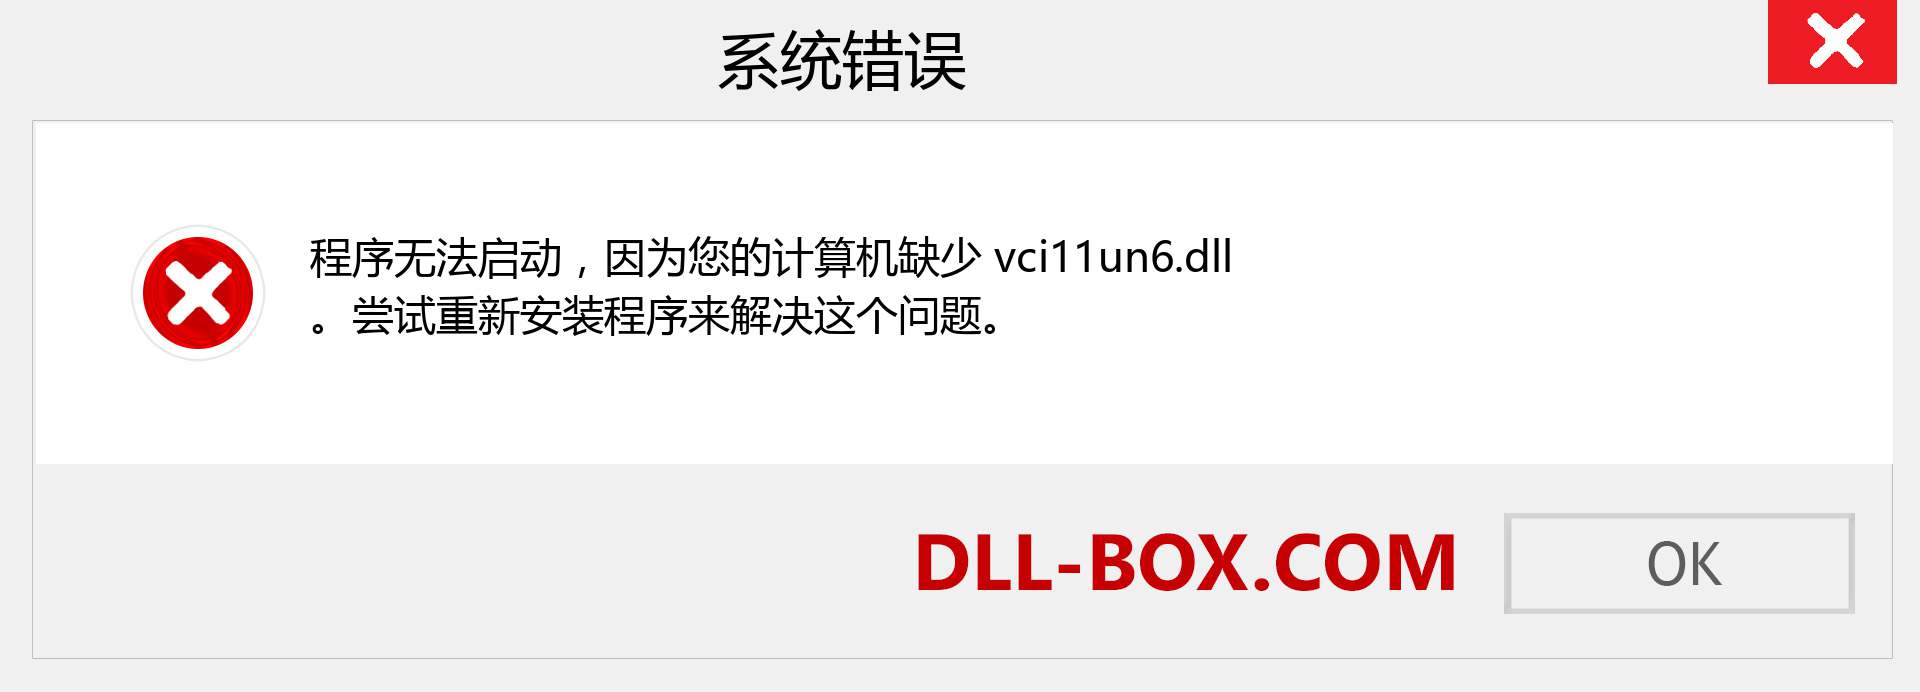 vci11un6.dll 文件丢失？。 适用于 Windows 7、8、10 的下载 - 修复 Windows、照片、图像上的 vci11un6 dll 丢失错误